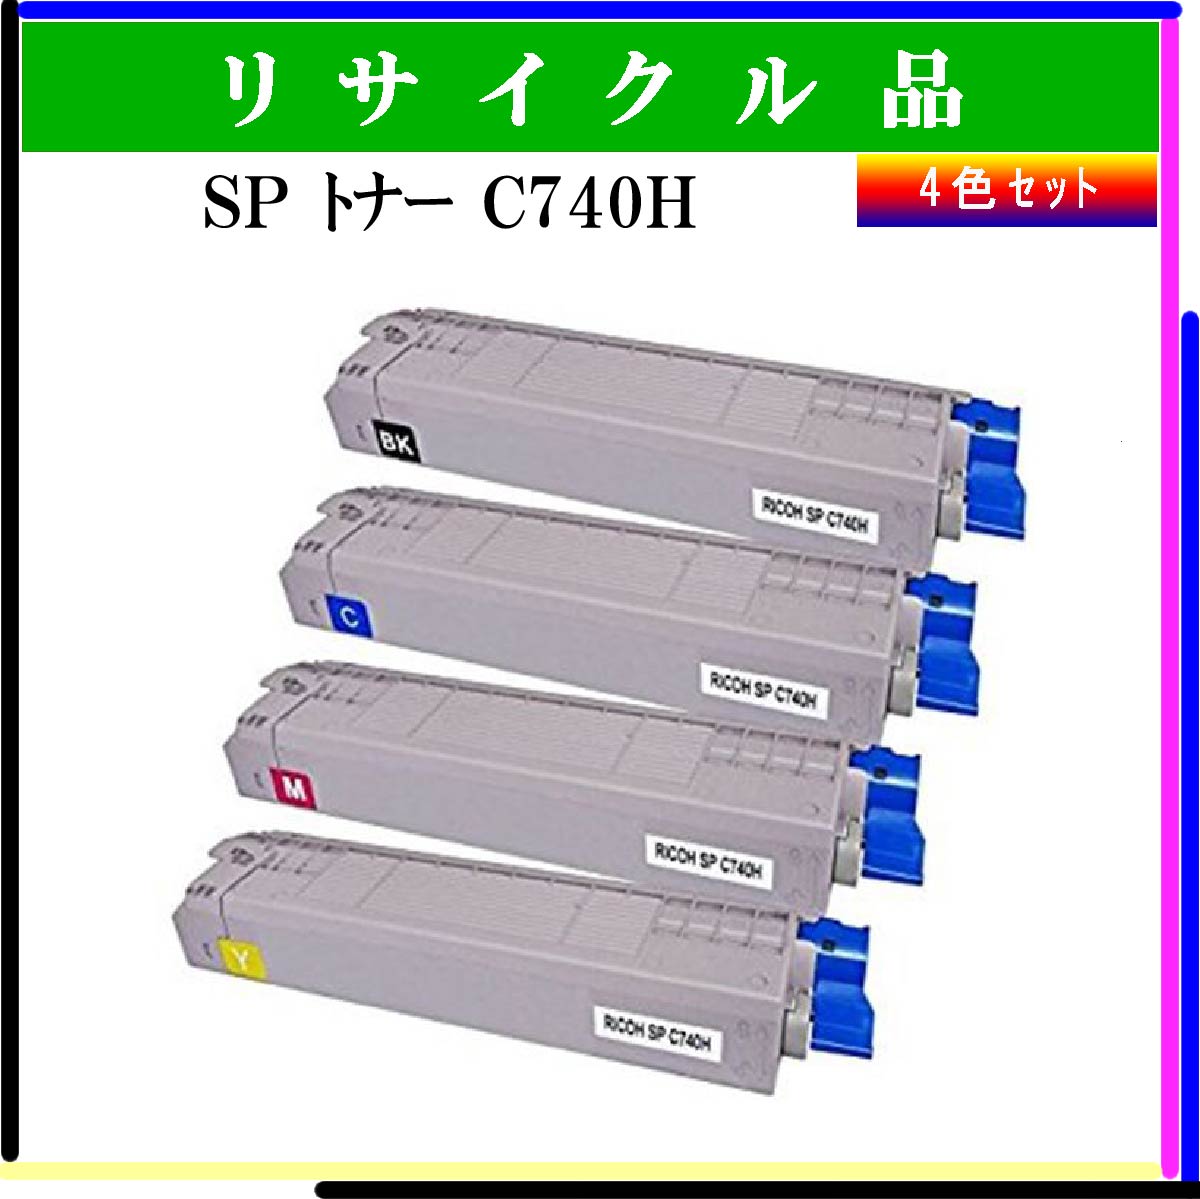 SP ﾄﾅｰ C740H (4色ｾｯﾄ)